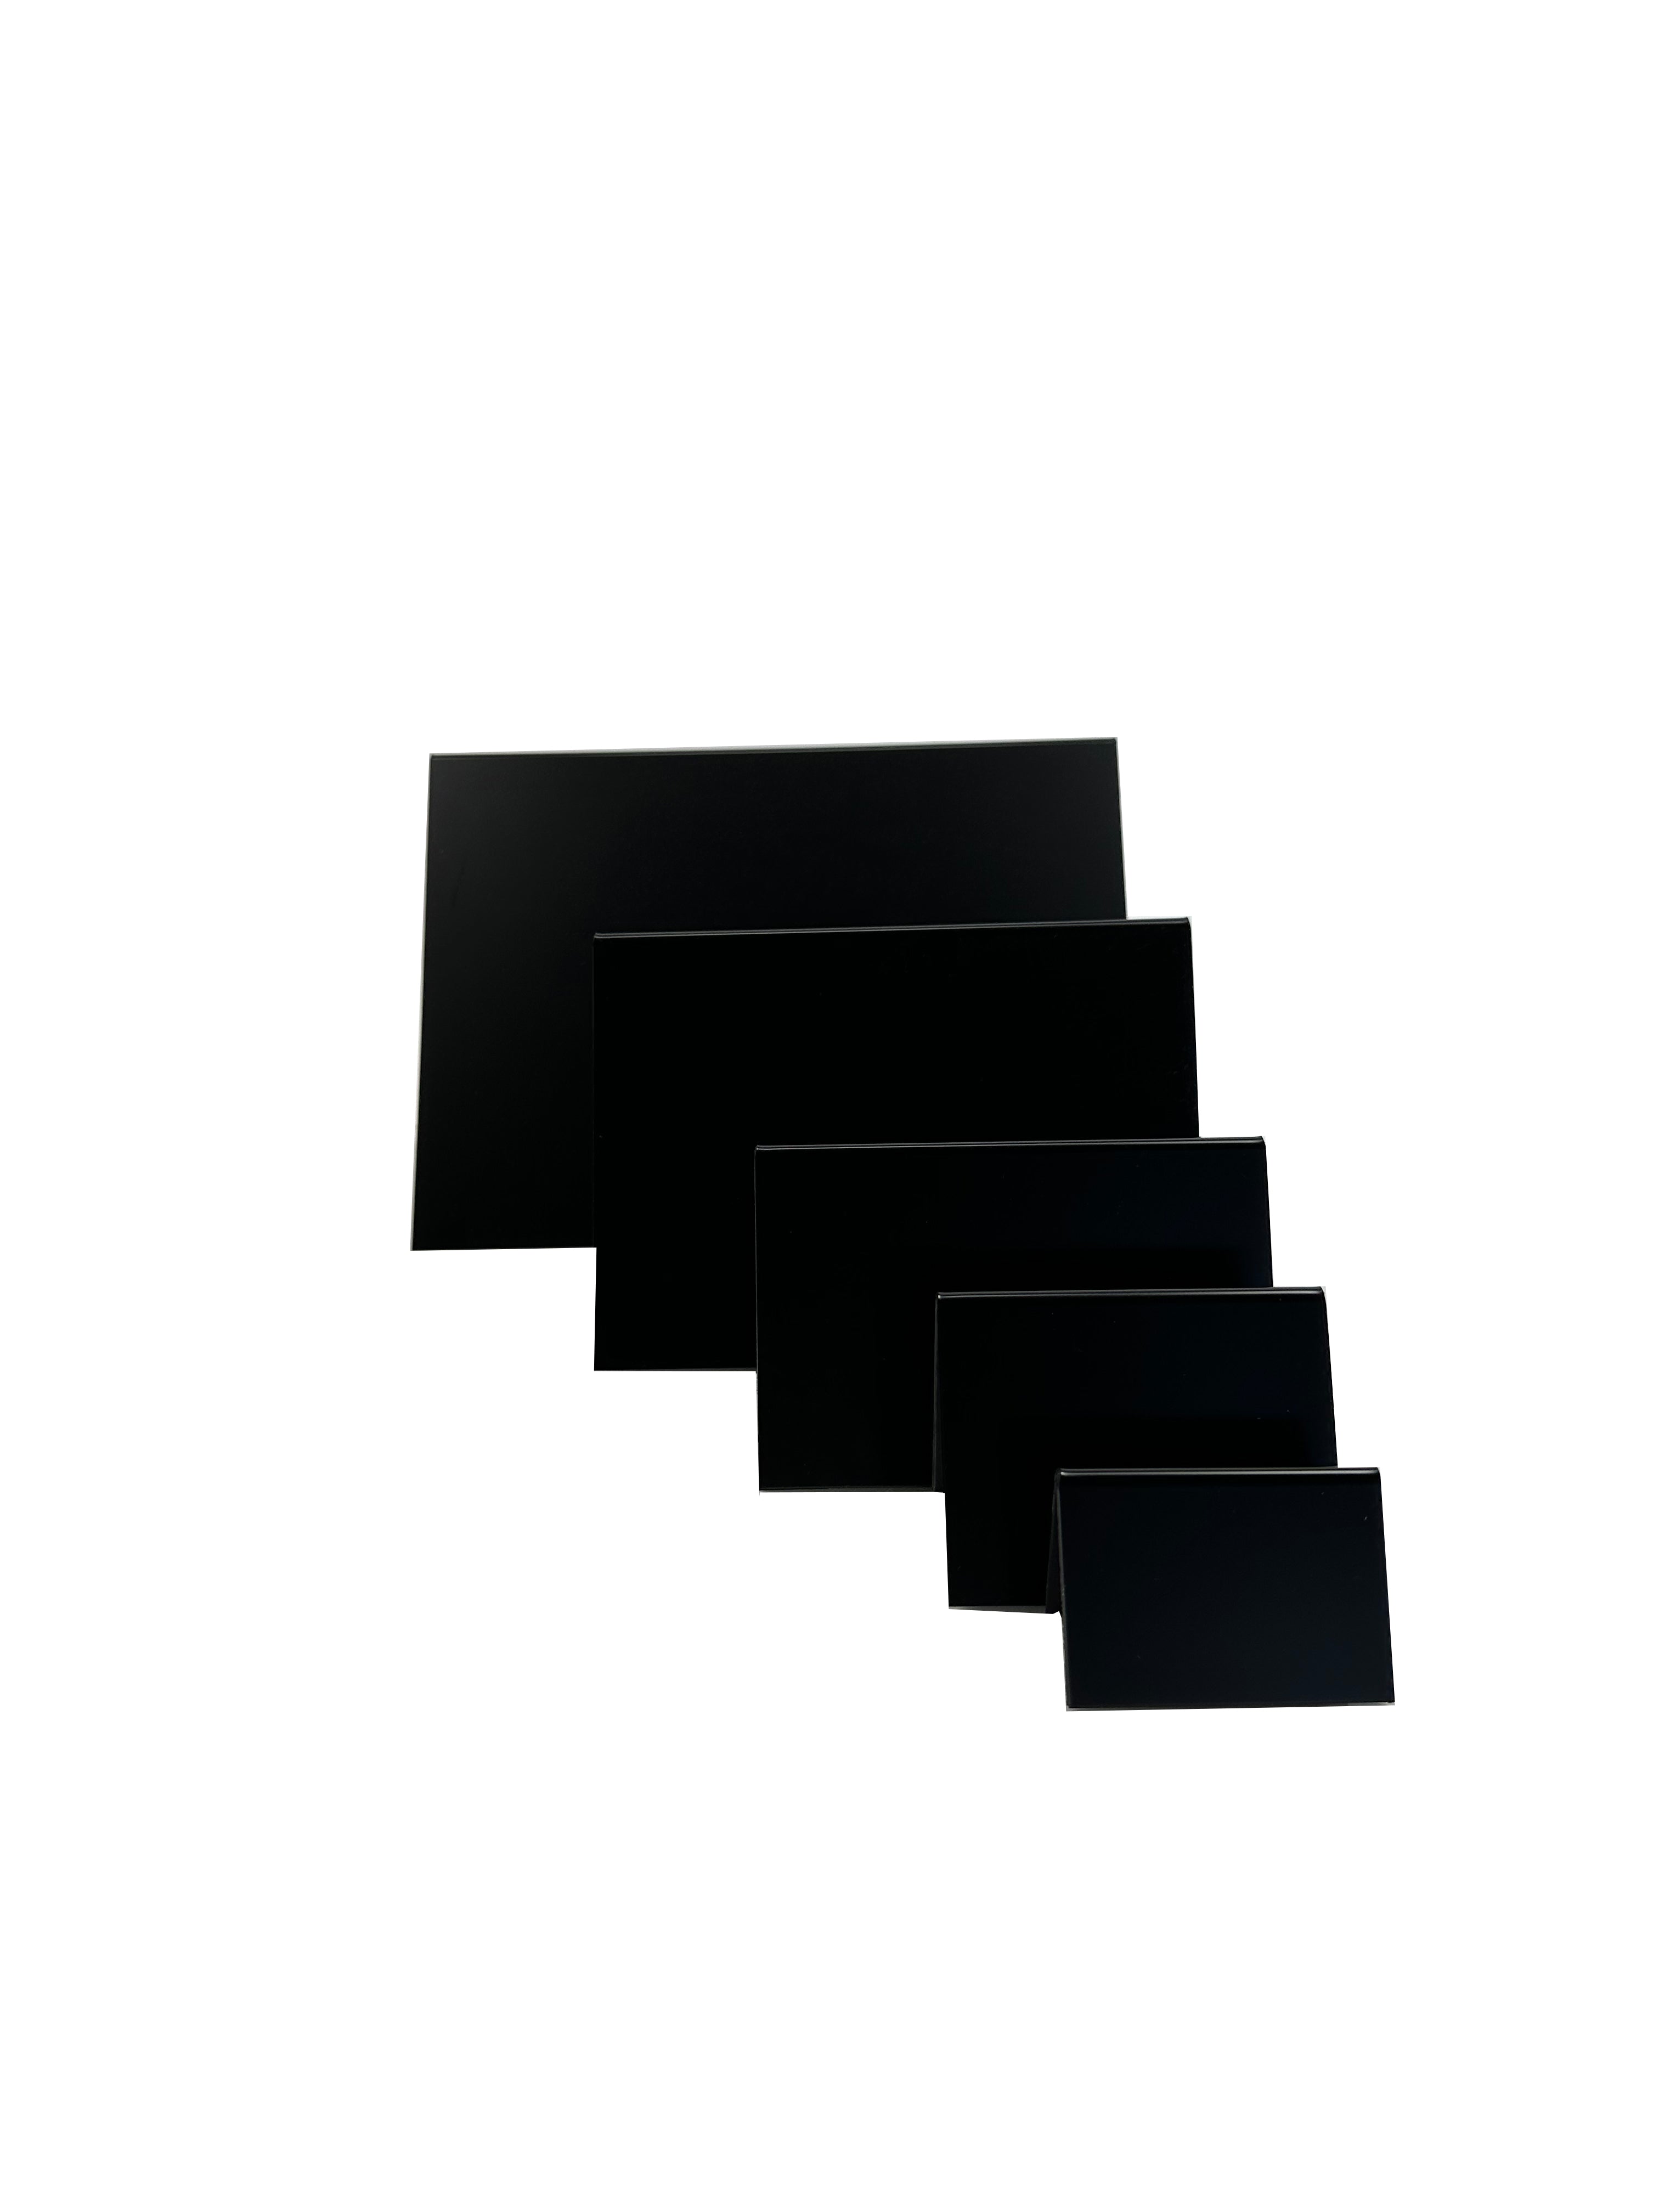 Tischaufsteller, schwarz in A-Form